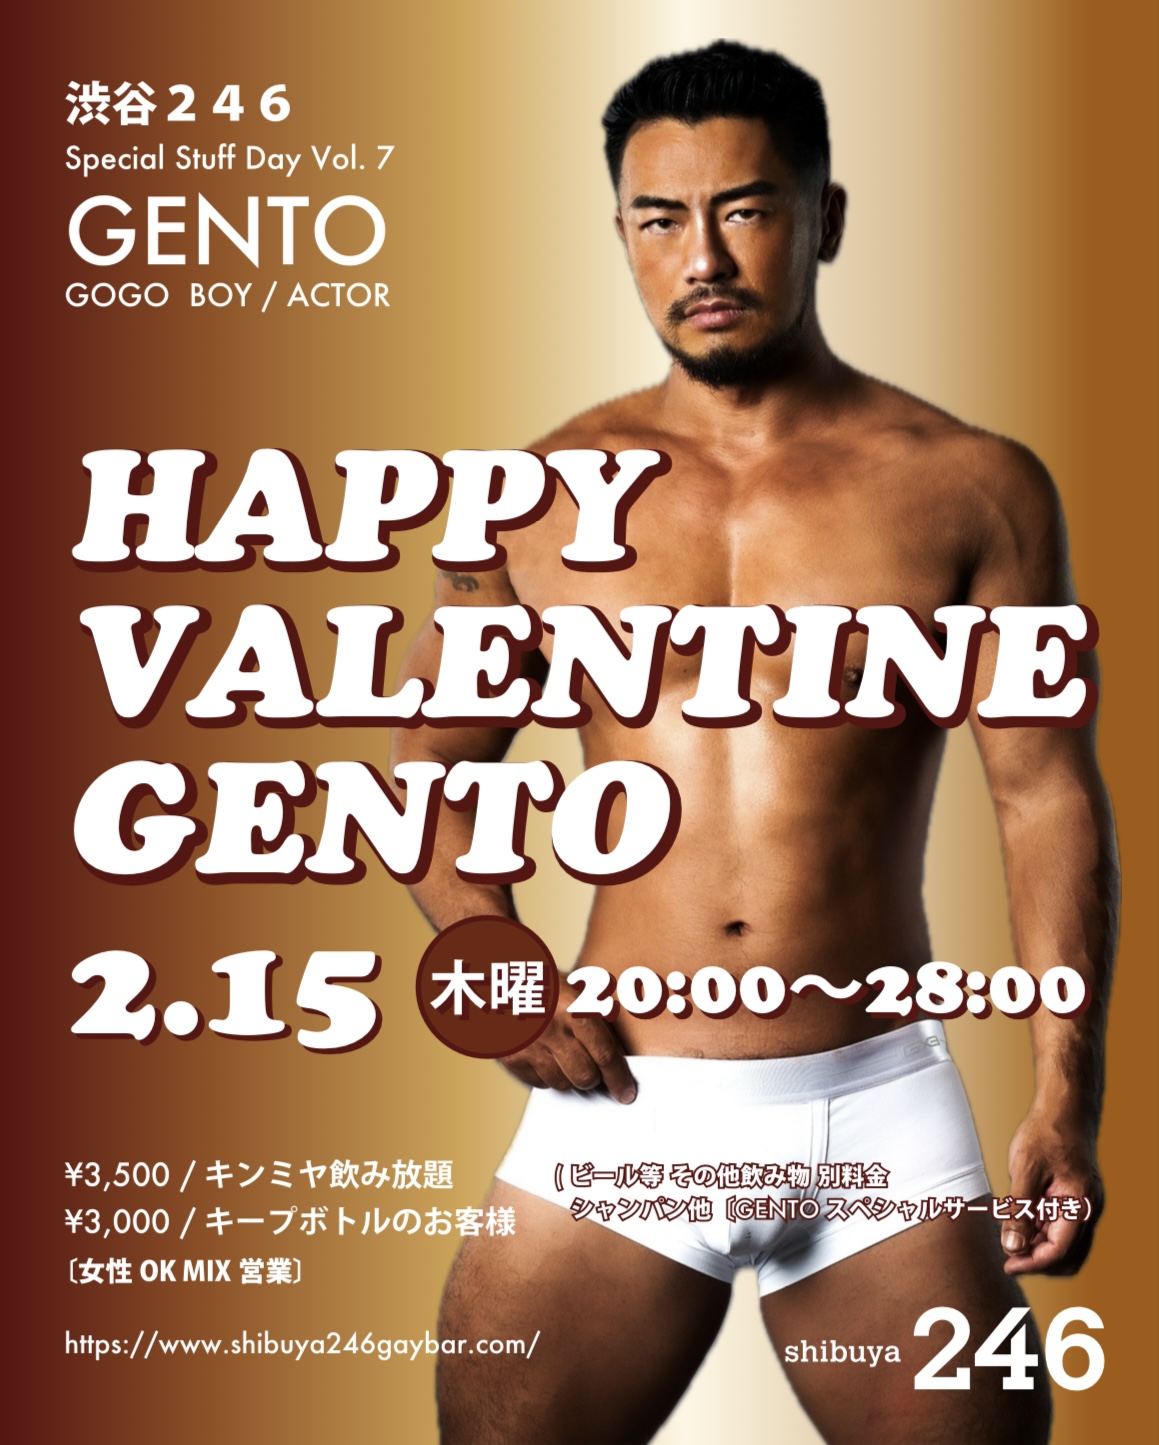 2/15木曜 大人気GOGO GENTOバレンタインナイト@渋谷駅横ゲイバー246